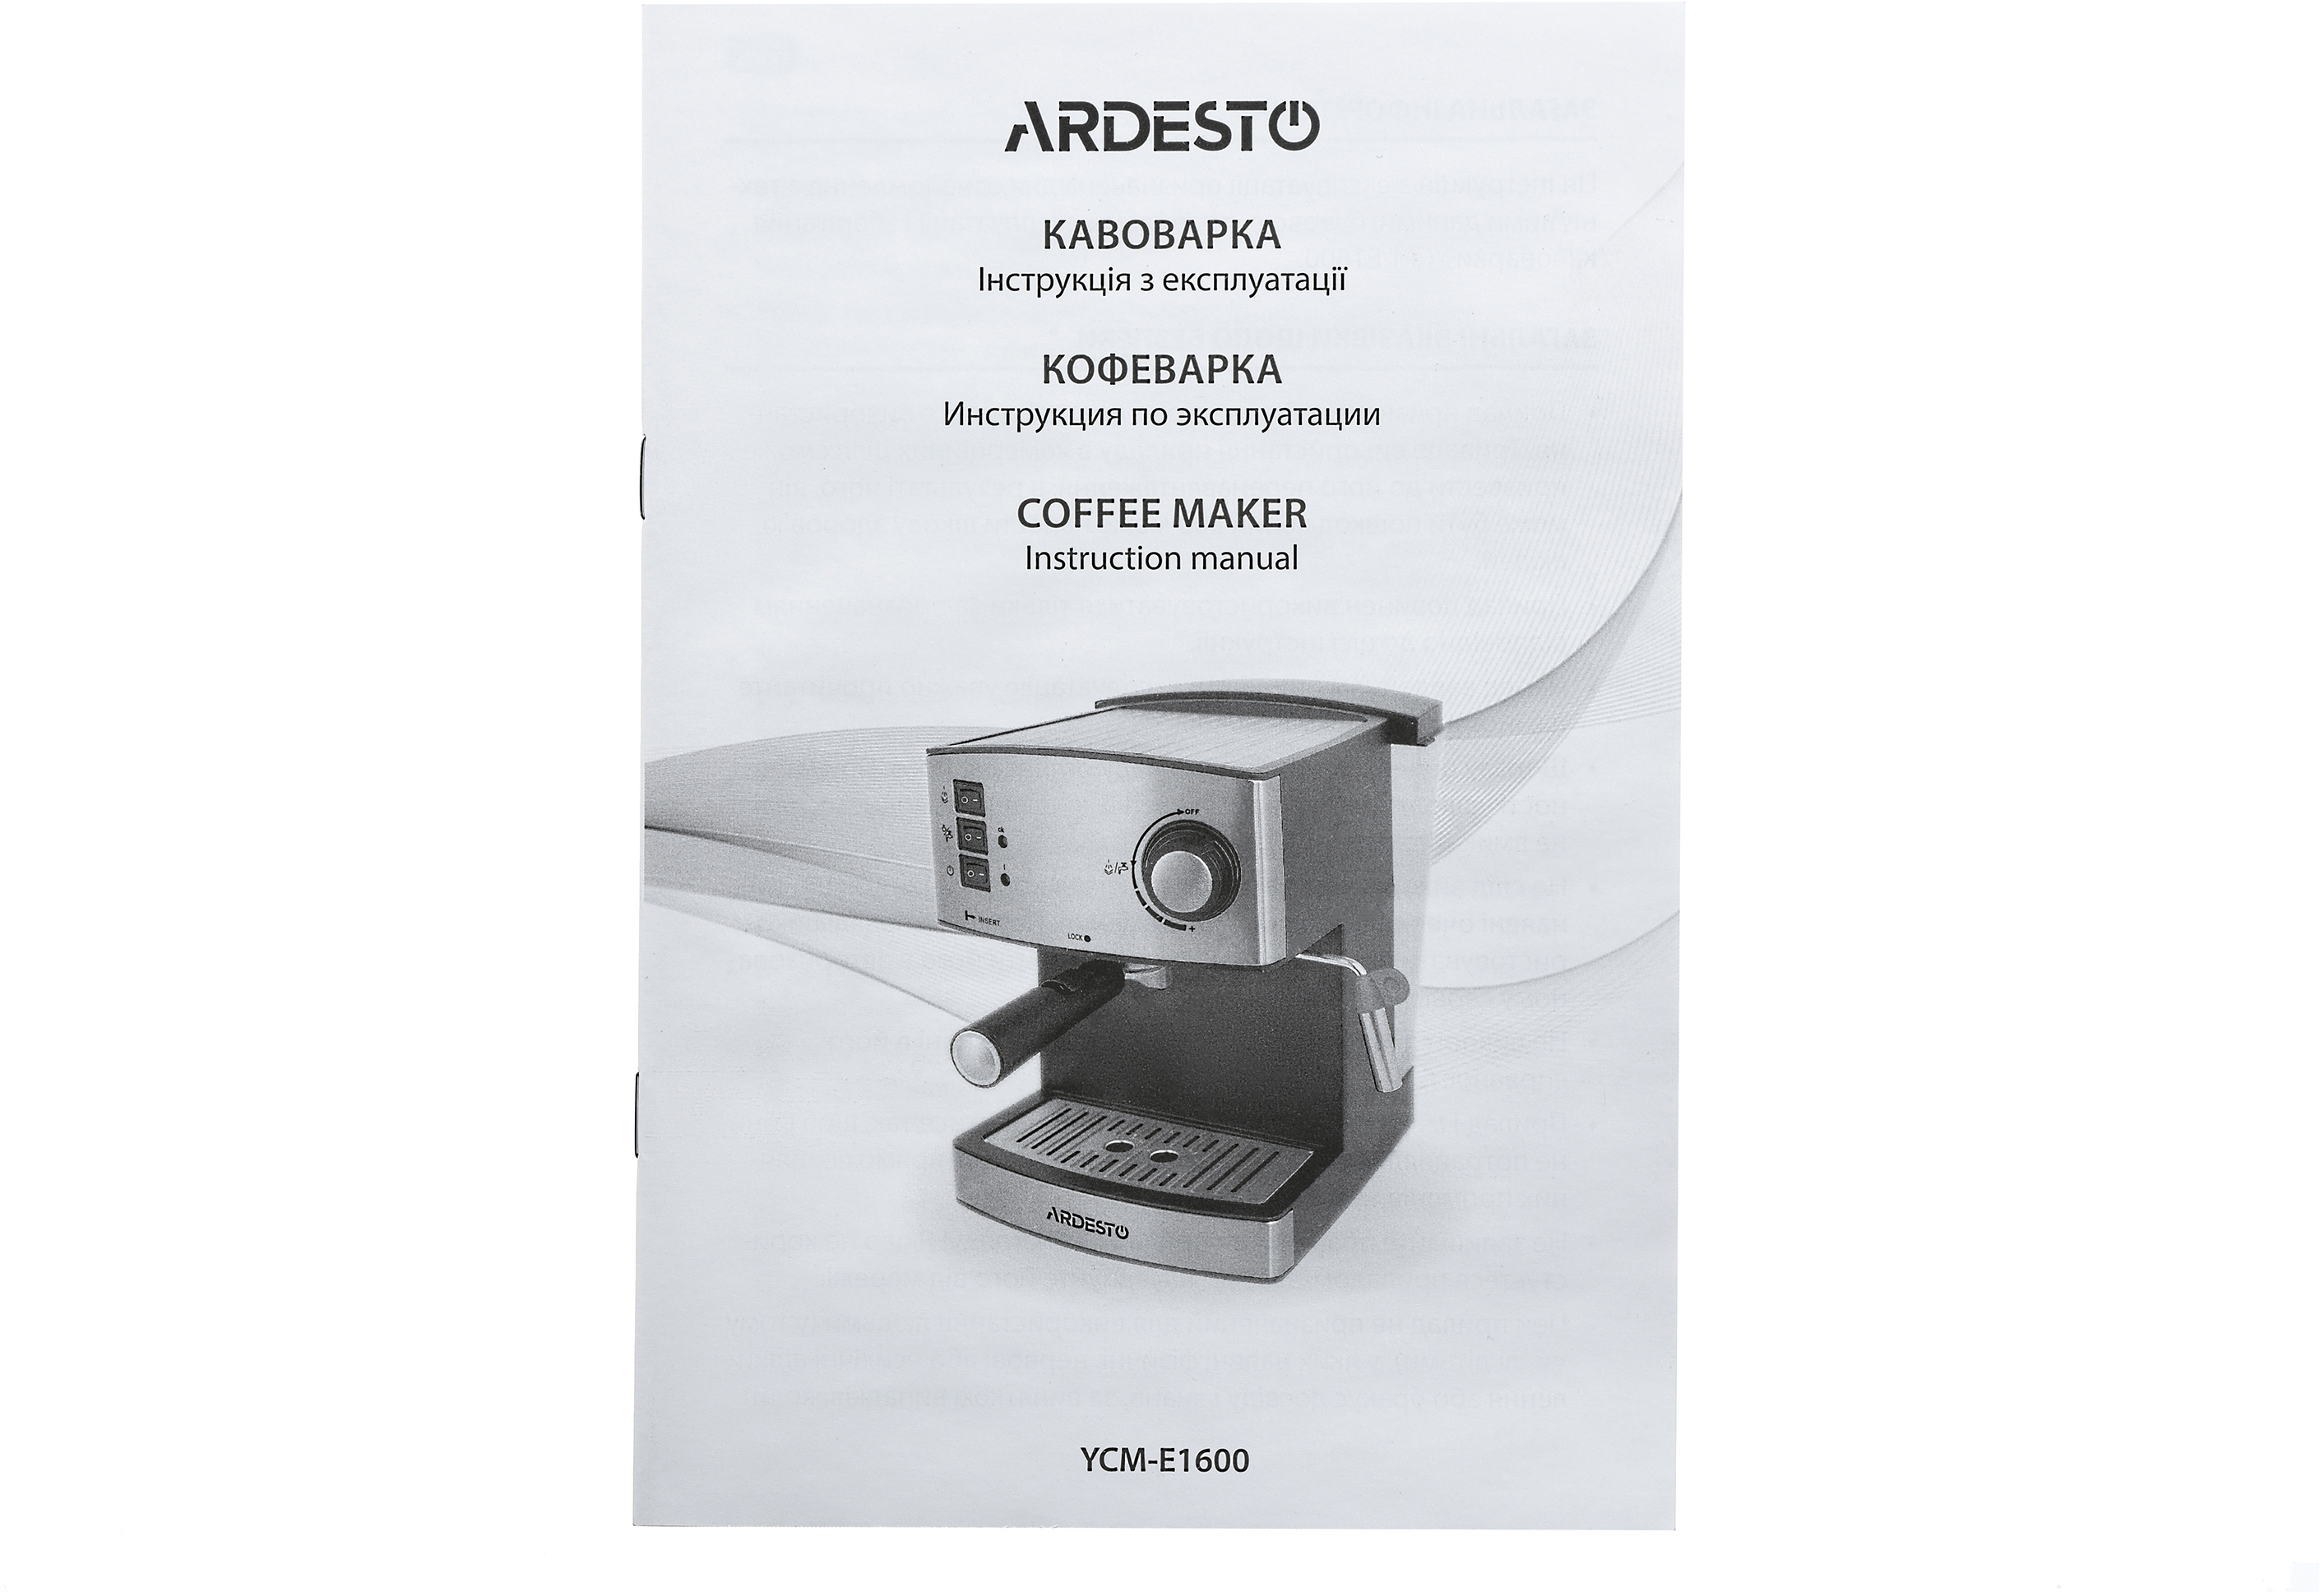 Кофеварка Ardesto YCM-E1600 обзор - фото 11